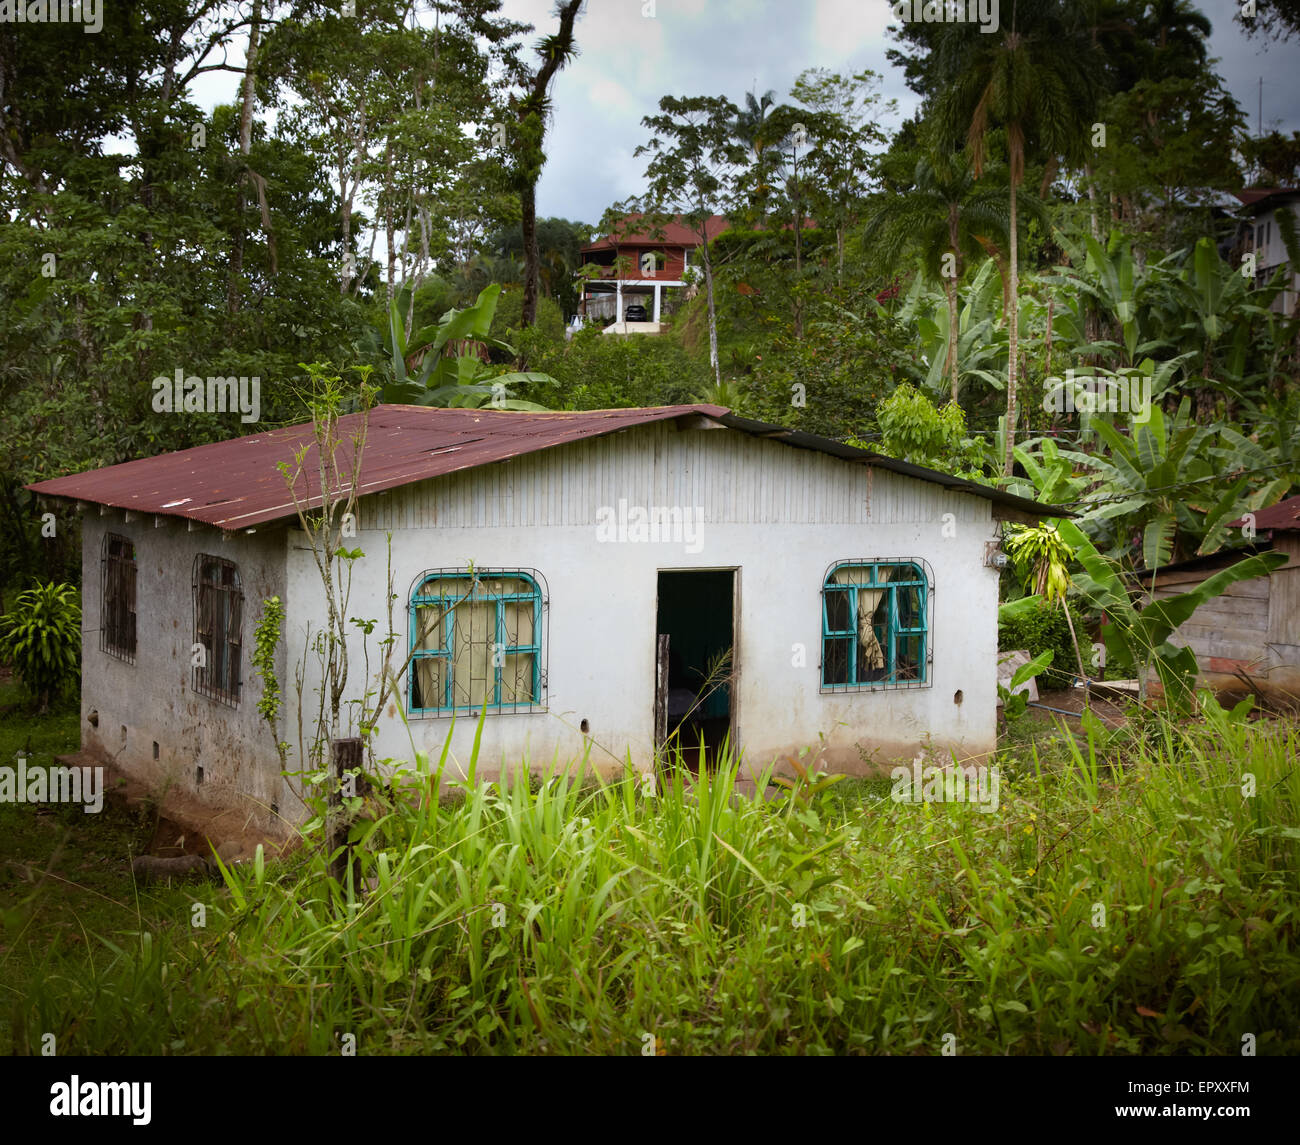 Facade of a house in a village, Costa Rica Stock Photo